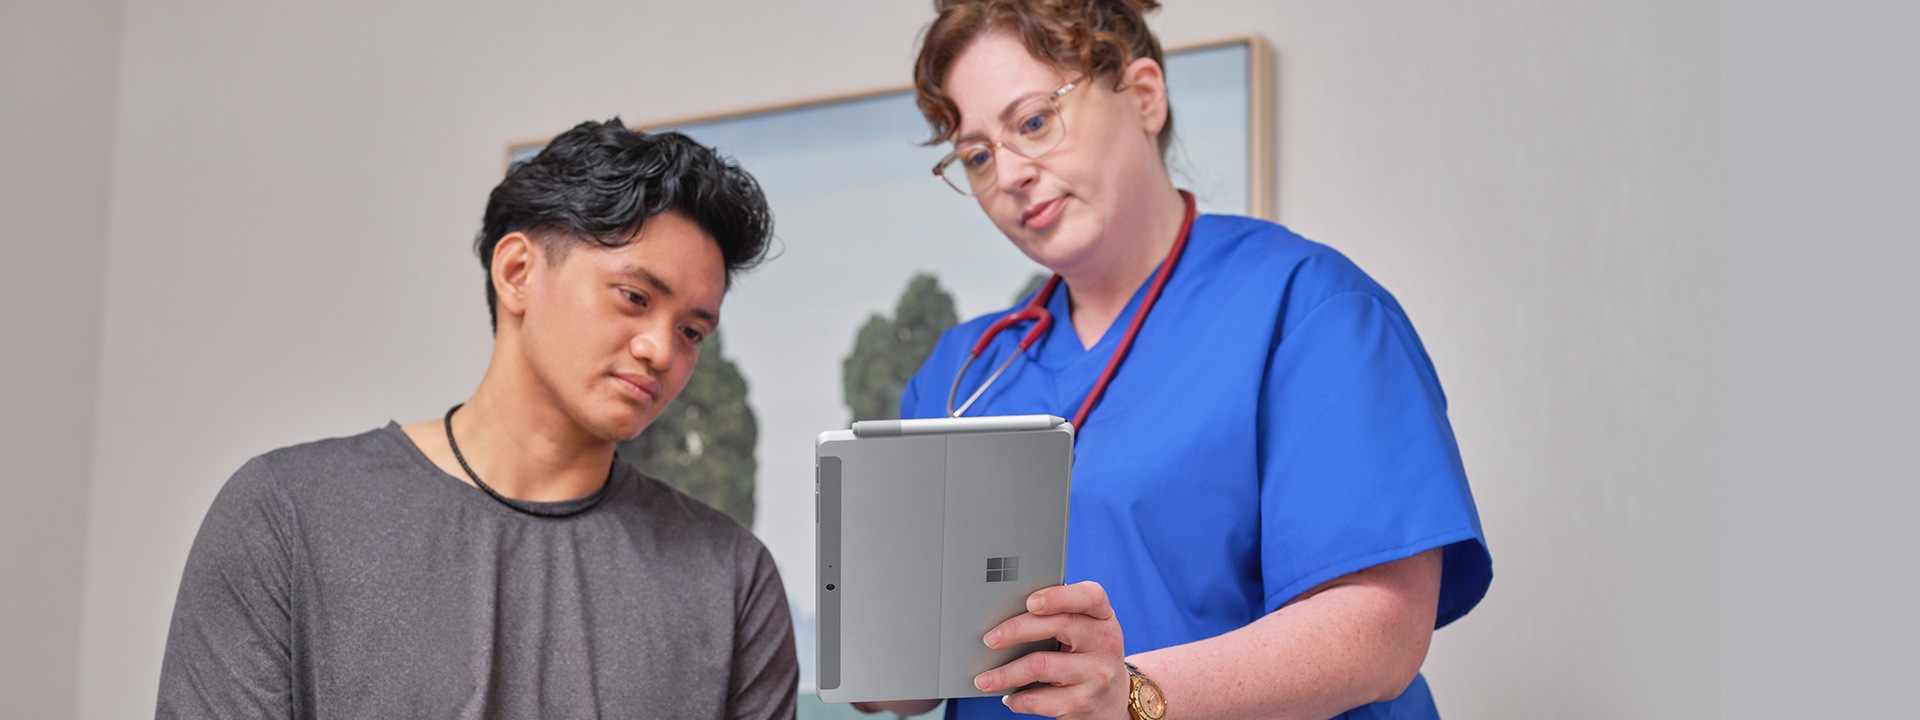 Une infirmière utilise un appareil Surface Pro pour faire l'admission d'un patient dans un cadre médical